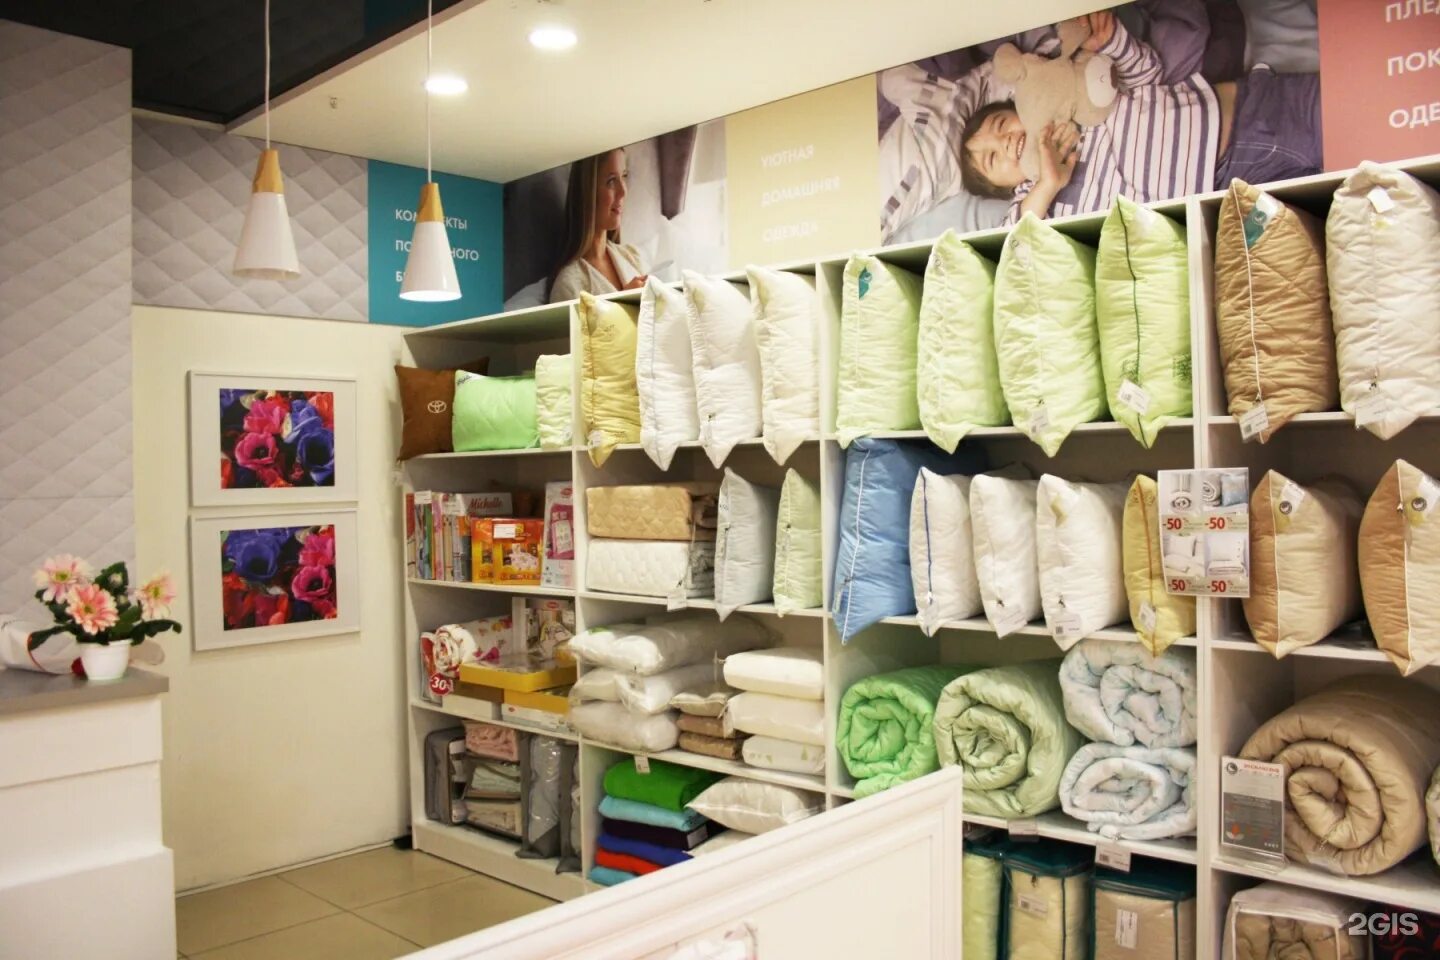 Магазин постелька каталог товаров. Магазин домашнего текстиля. Дизайн магазина текстиля. Домашний текстиль. Интерьер магазина постельного белья.